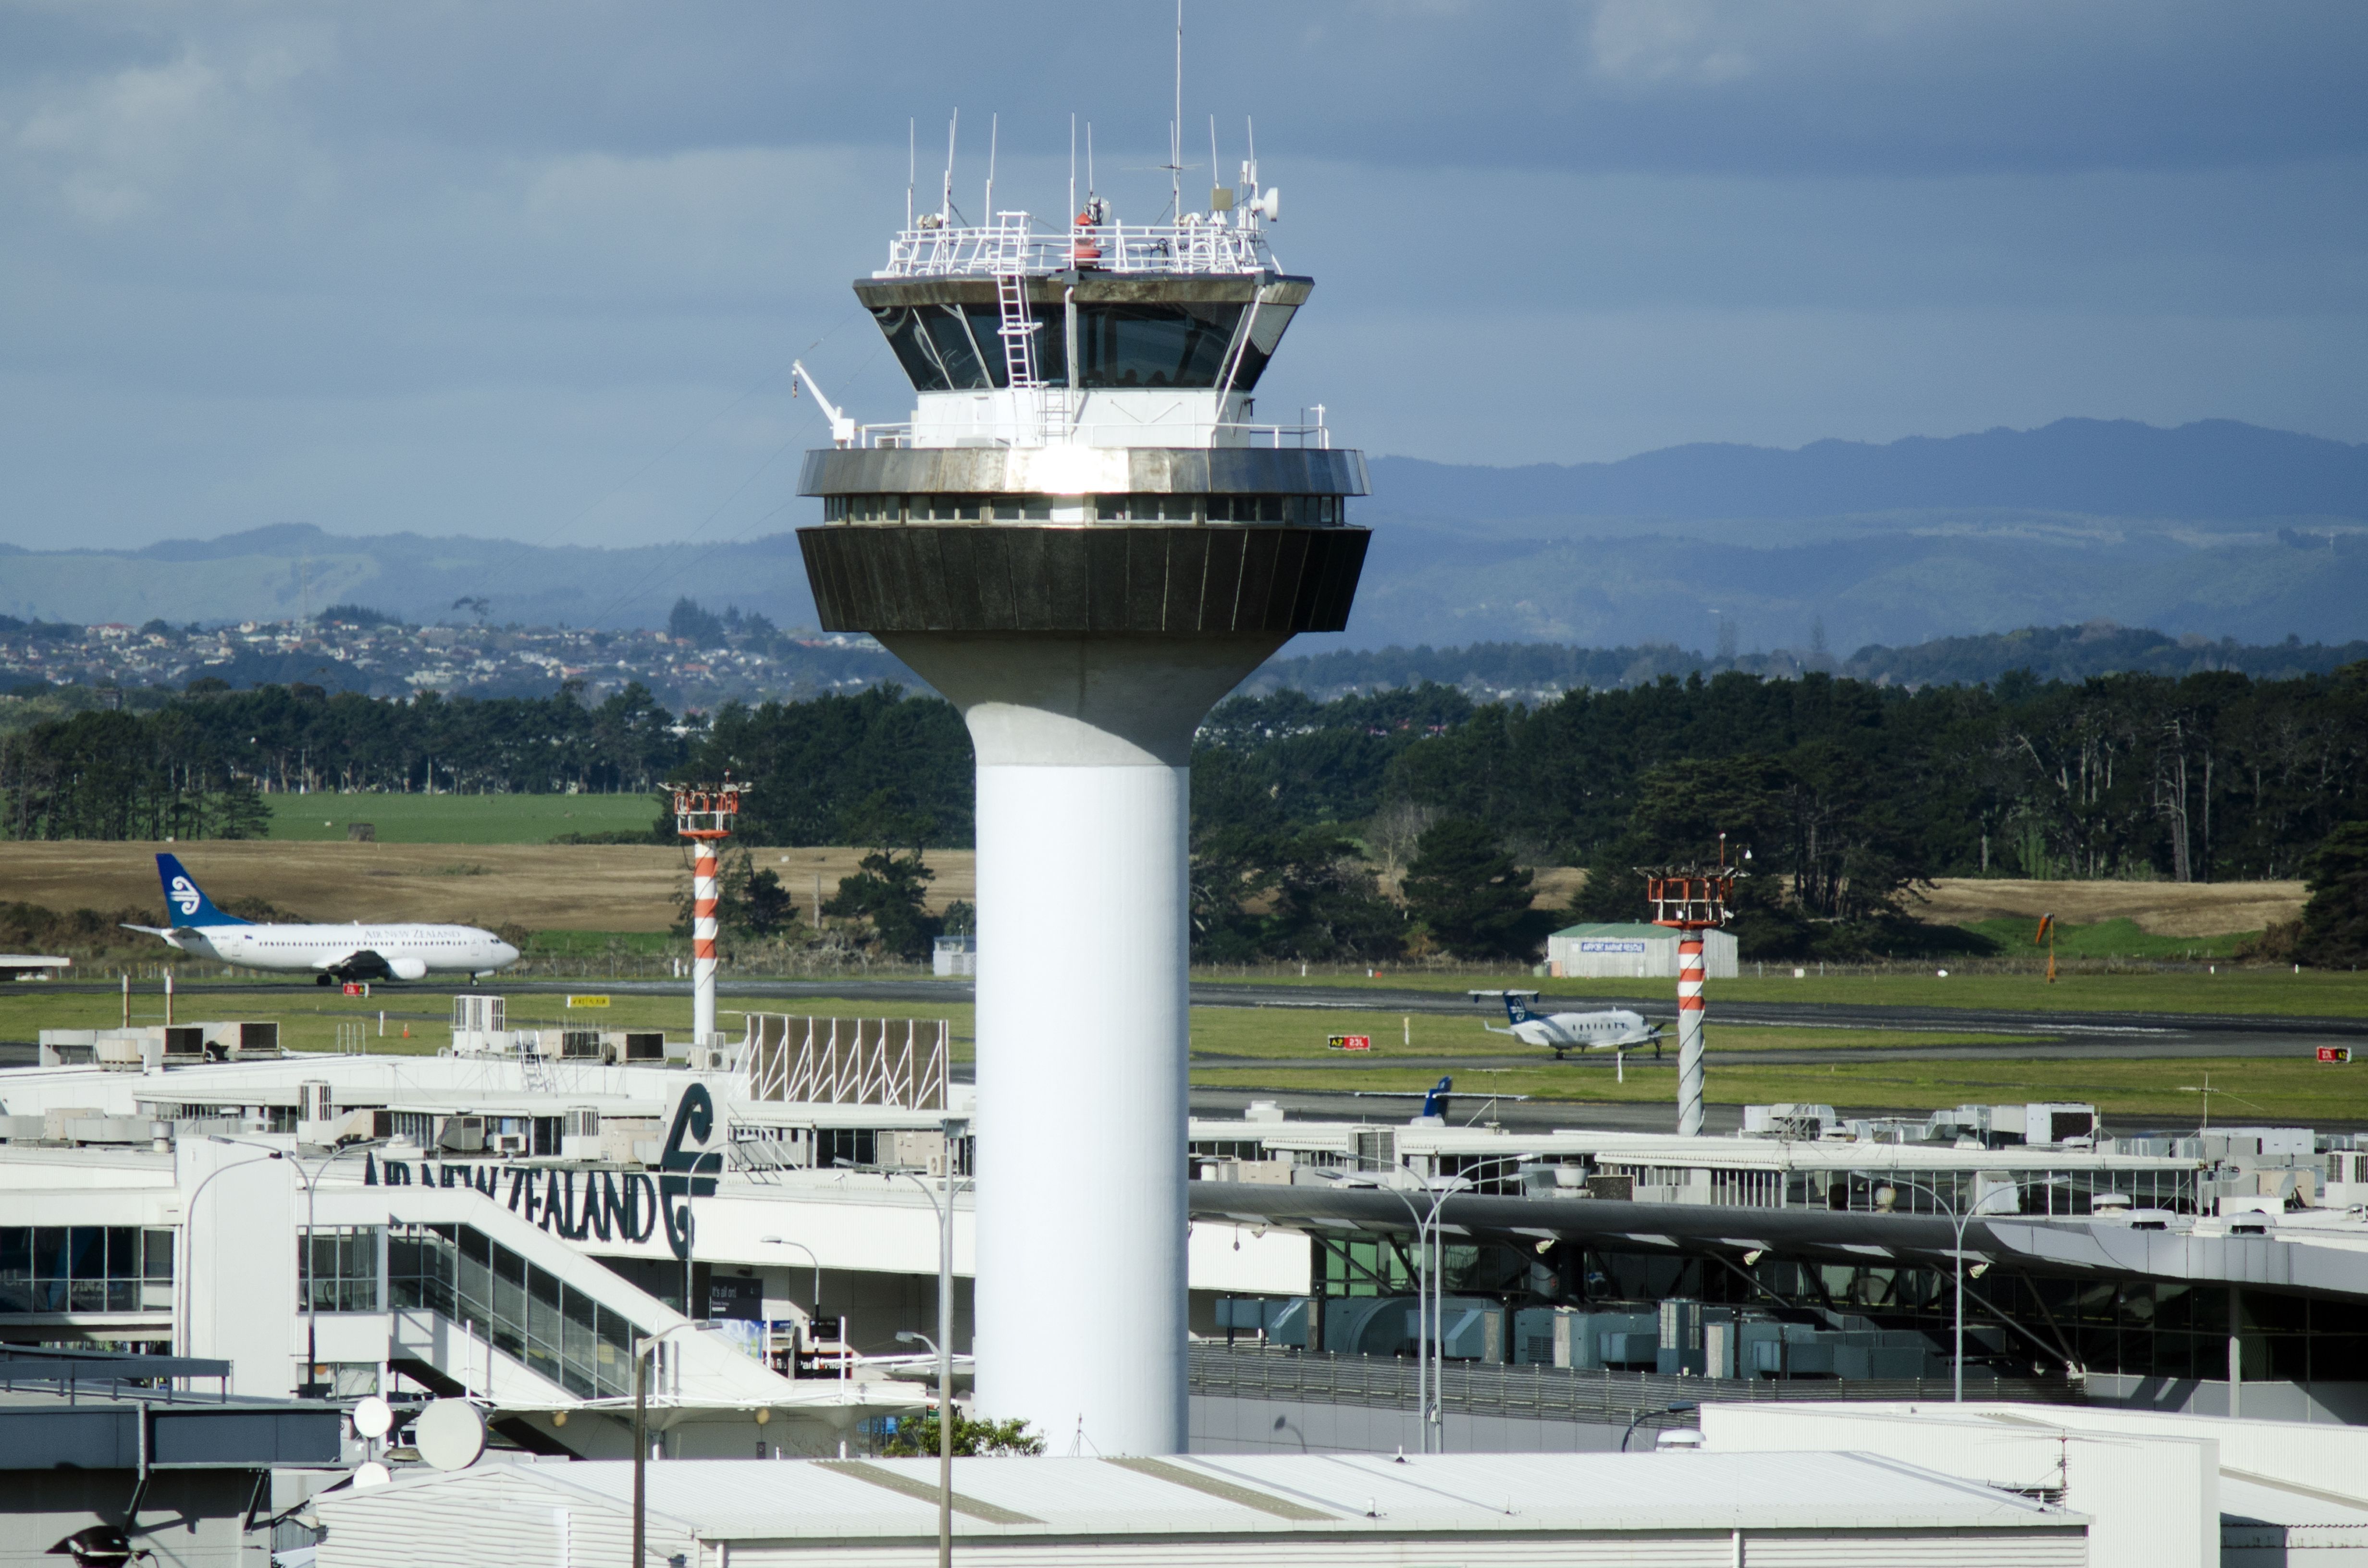 An Airport ATC Control Tower.